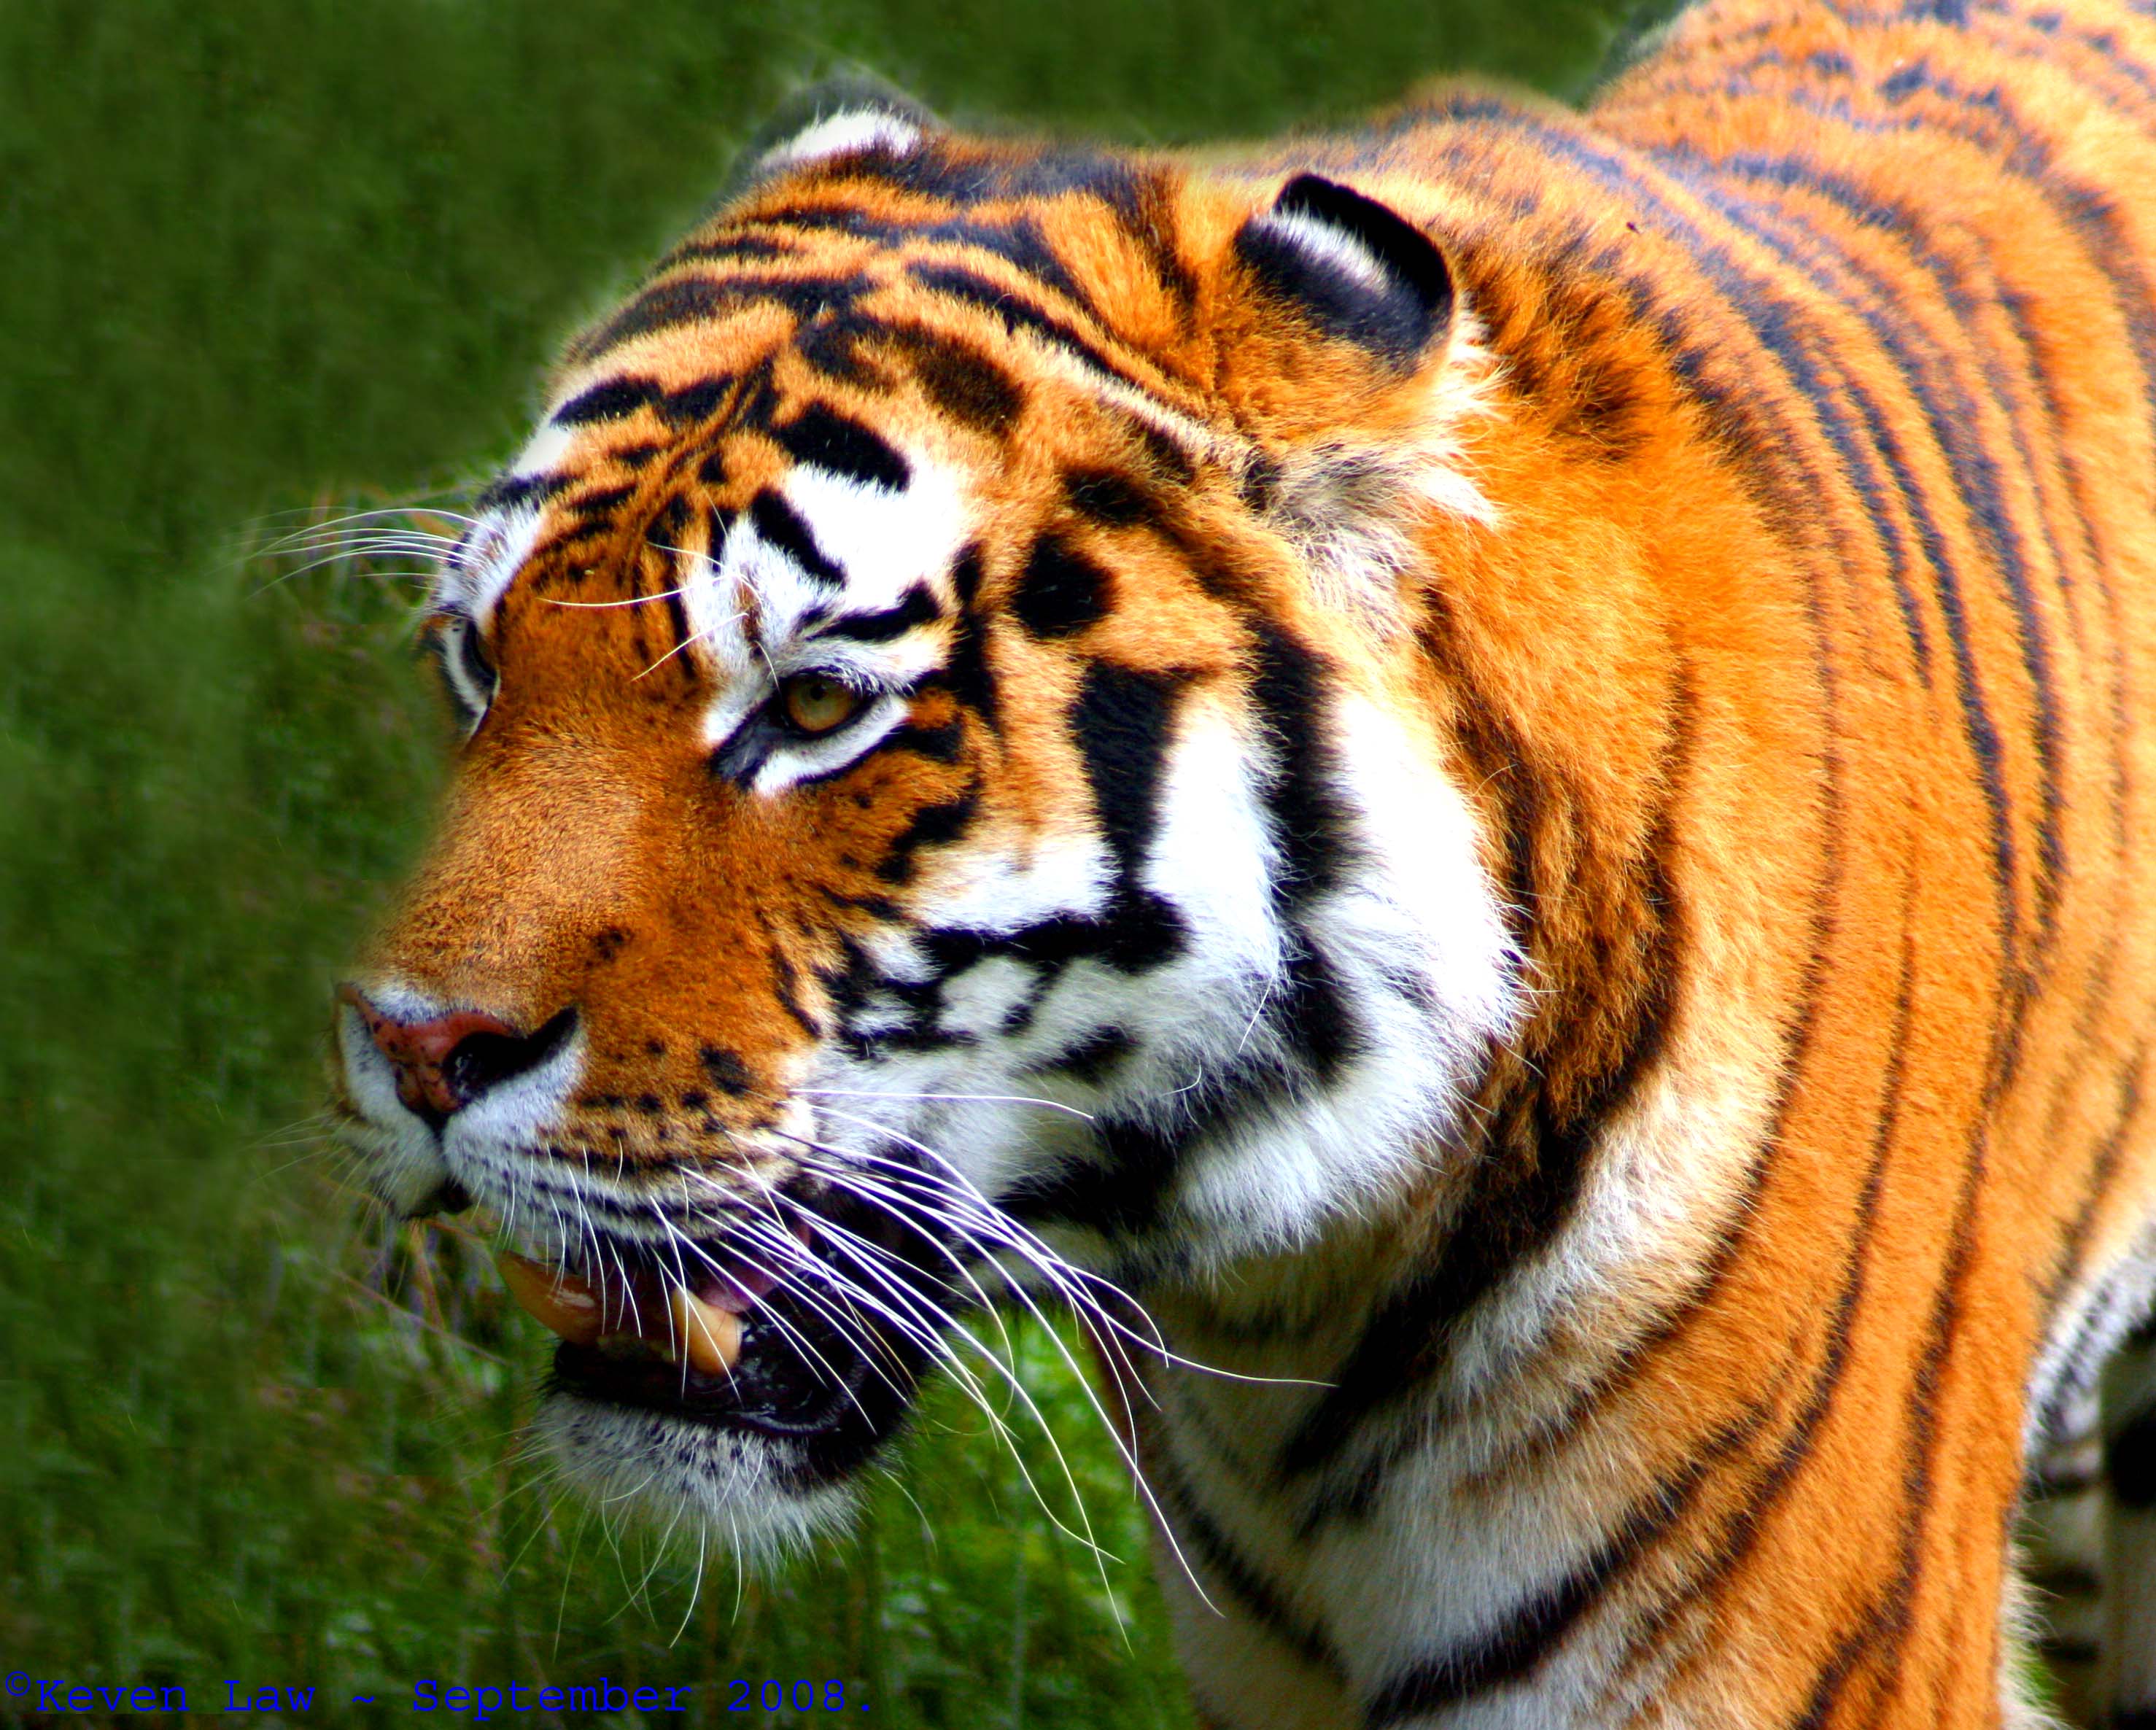 File:Flickr - law keven - Tiger, Tiger, Burning bright.....jpg ...